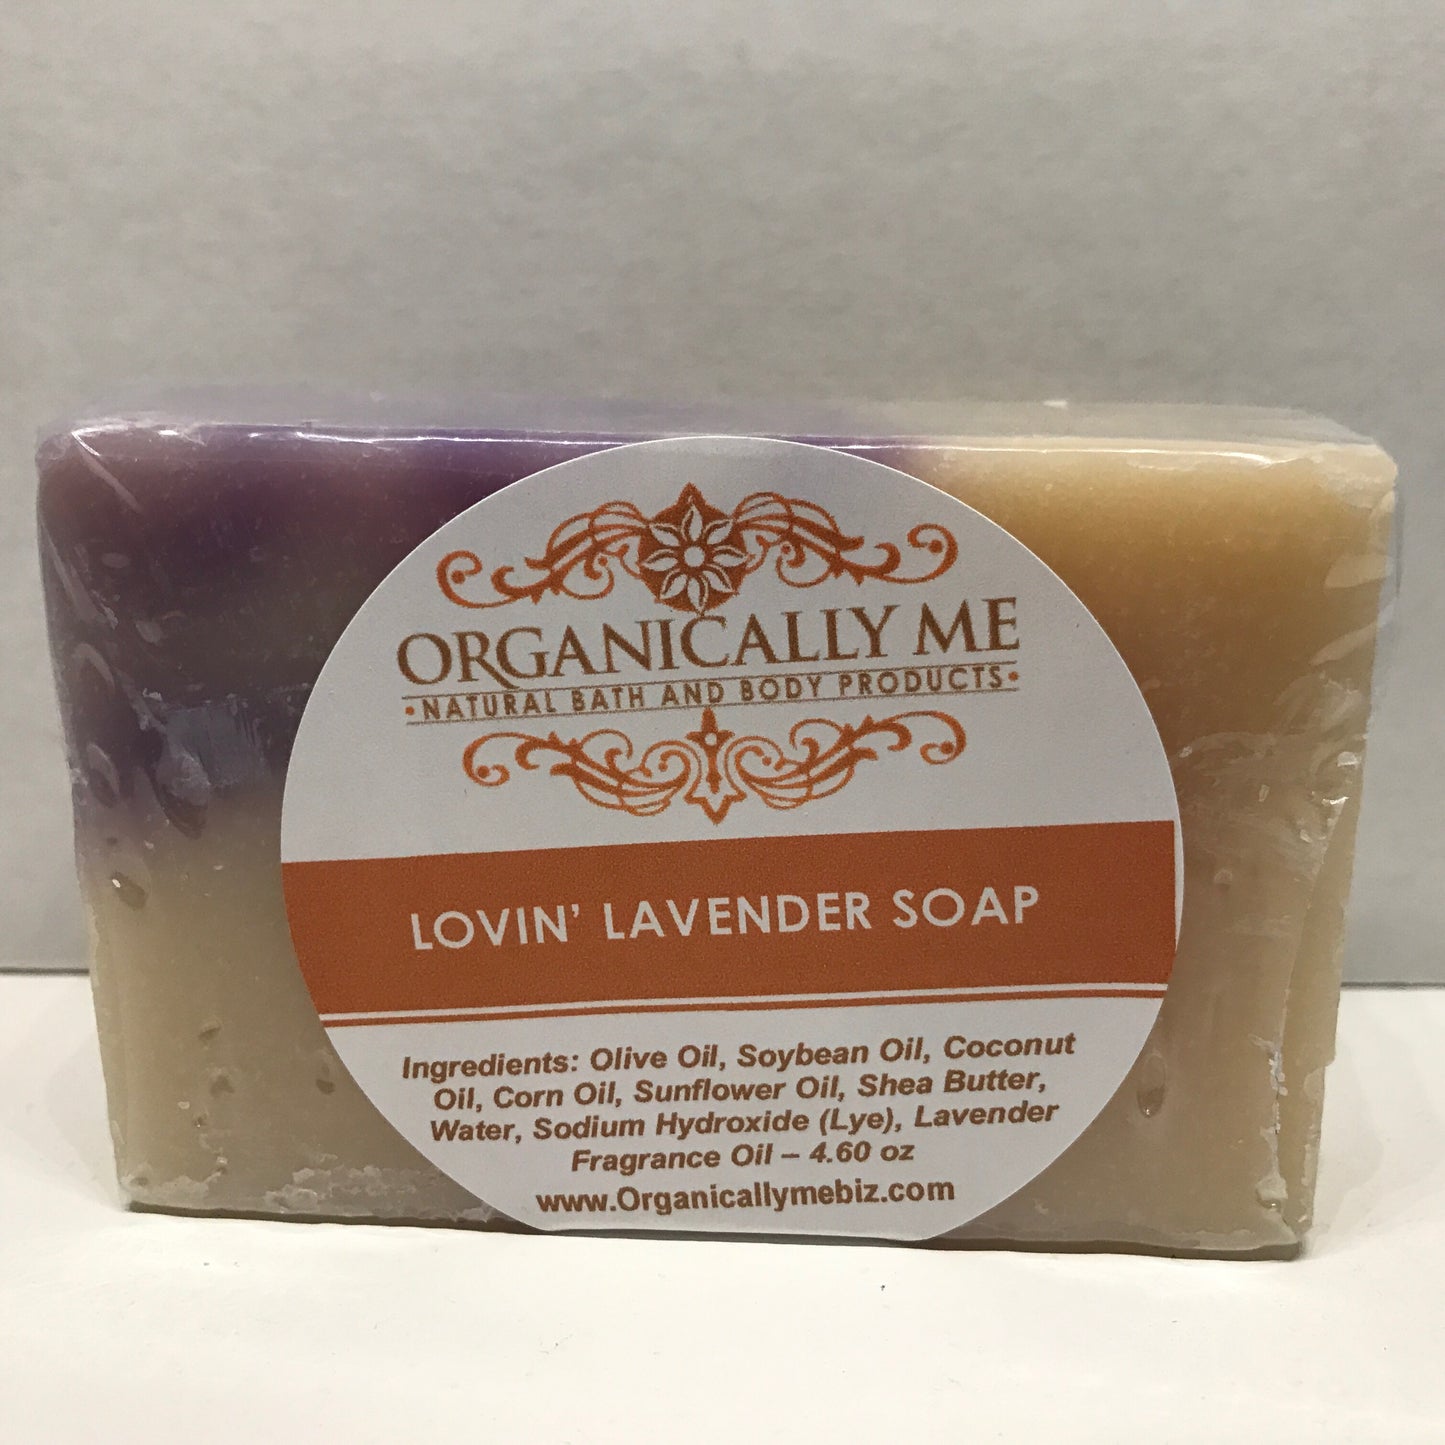 Lovin' Lavender Soap